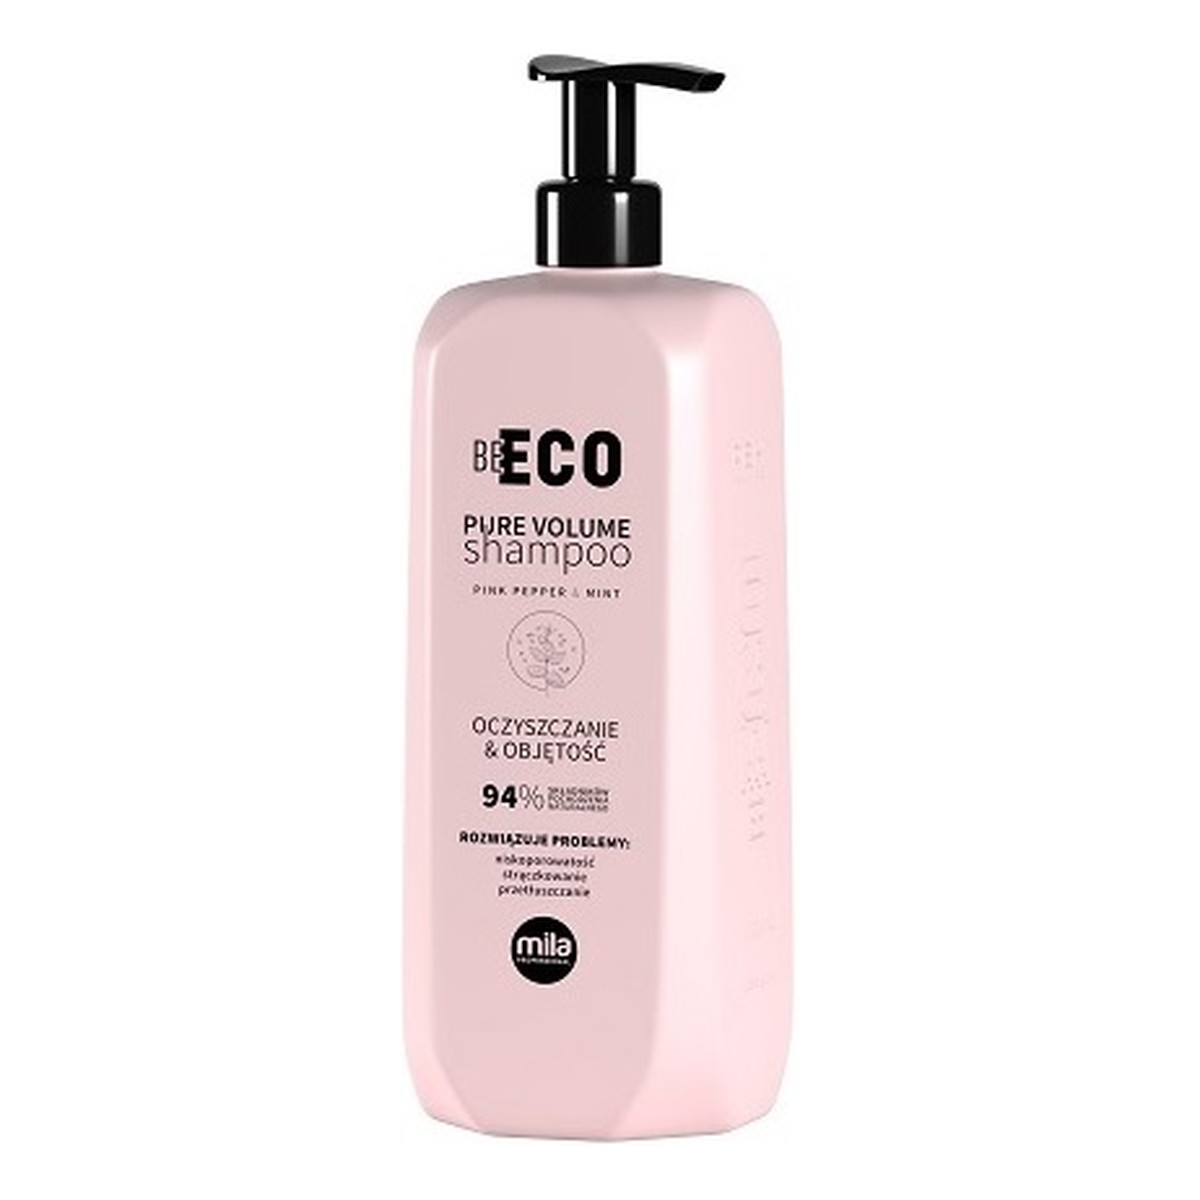 Mila Professional Be eco pure volume shampoo szampon do włosów oczyszczanie & objętość 250ml